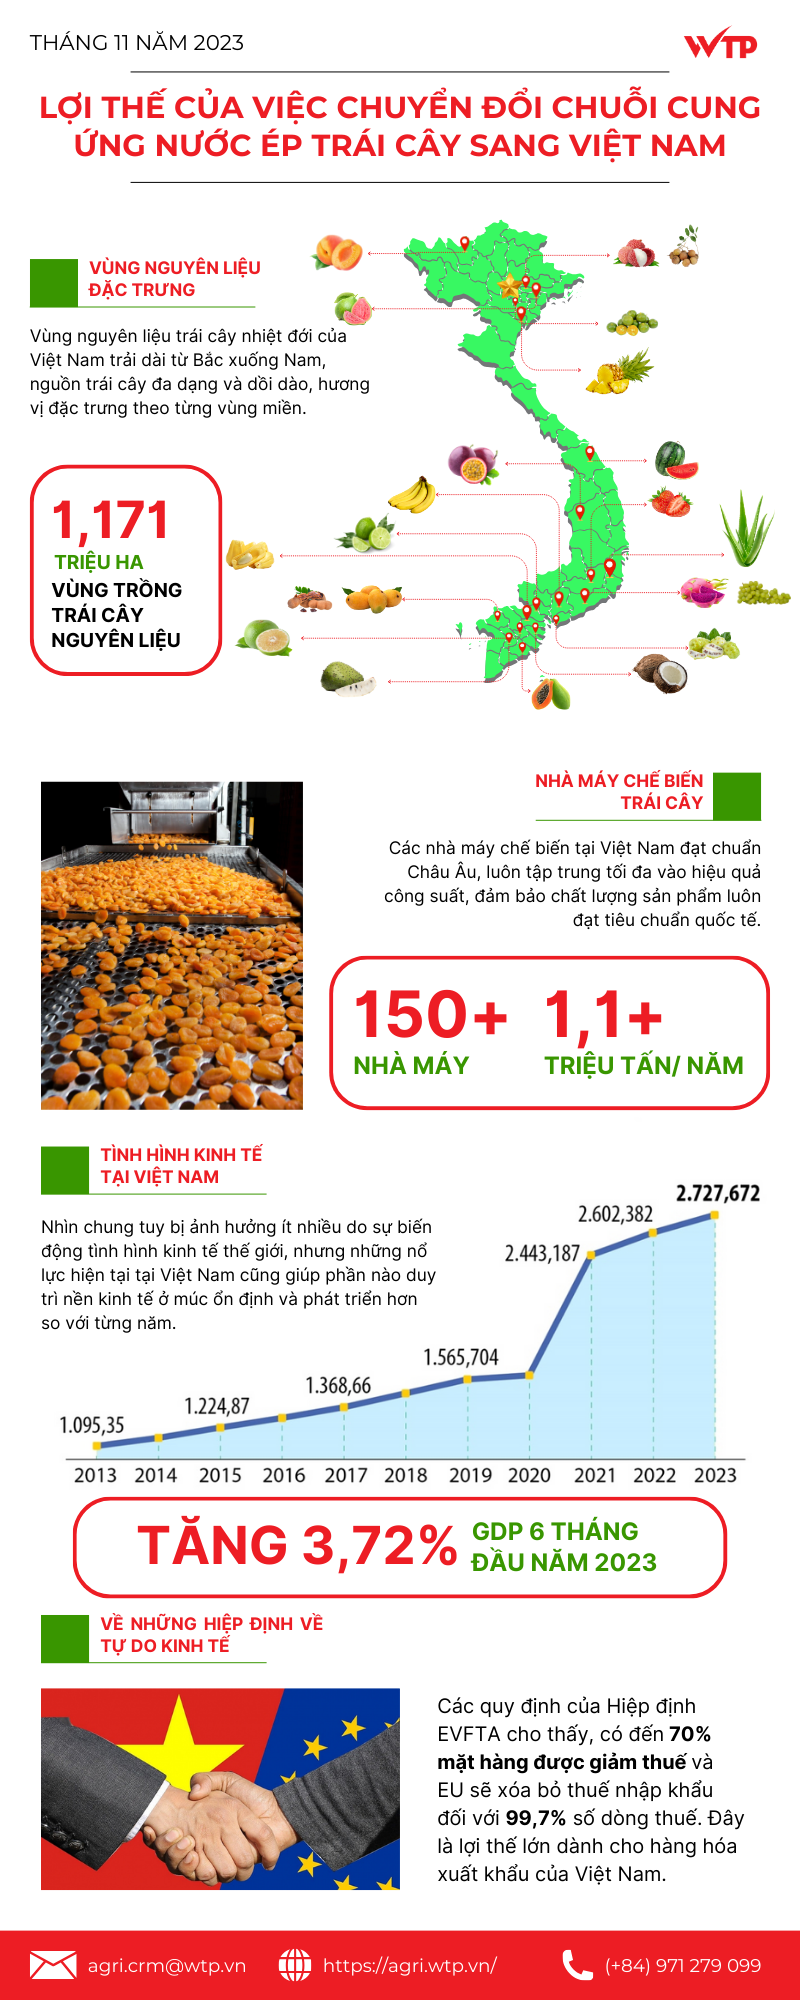 Chuyển đổi chuỗi cung ứng nước trái cây sang Việt Nam